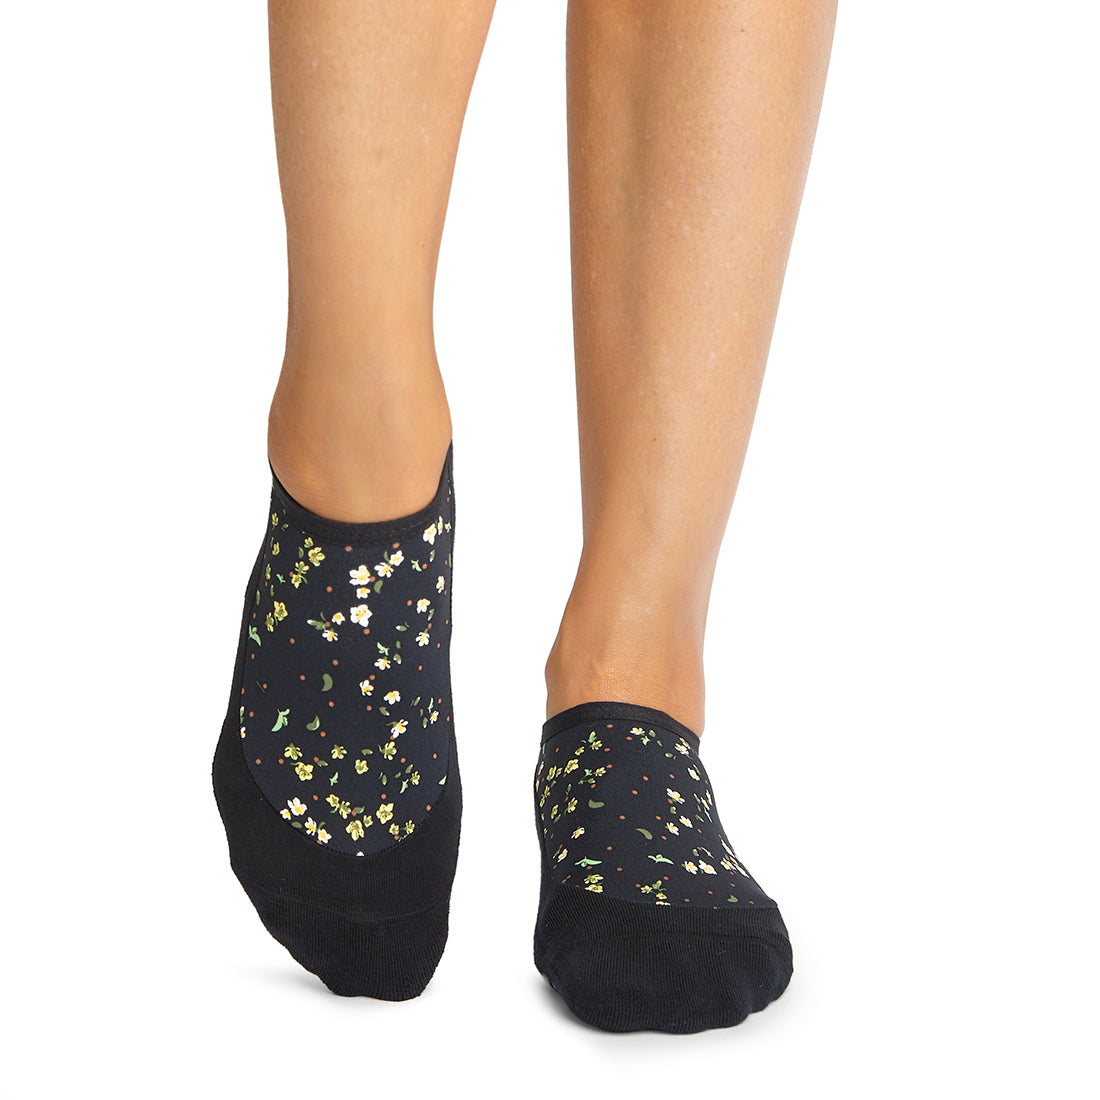 Tavi Chloe Grip Socks at YogaOutlet.com –